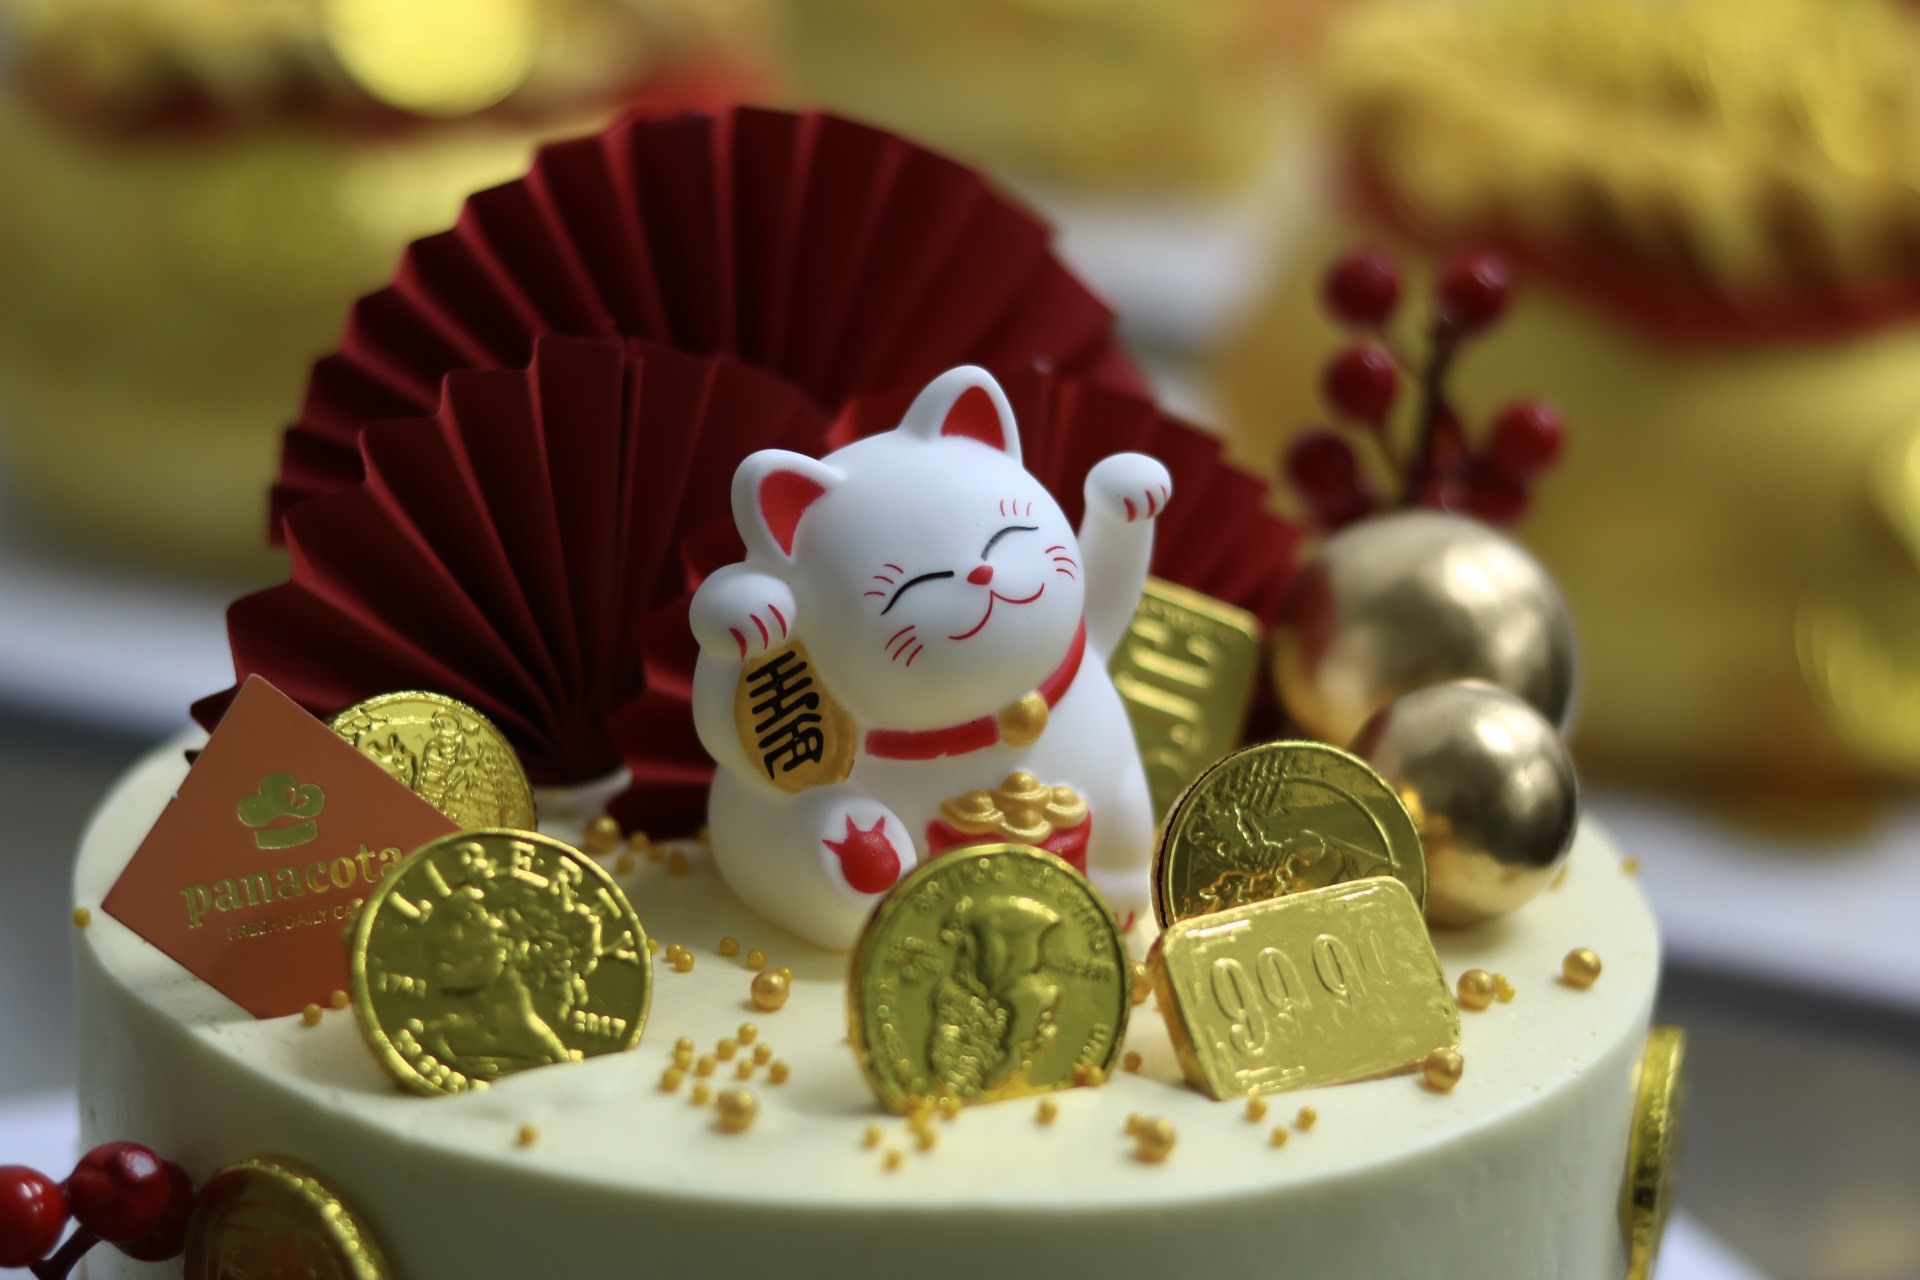 Bánh được đính thêm nhiều đồng tiền làm từ sôcôla, tượng Thần Tài hoặc mèo may mắn. Ảnh: Nguyễn Thúy.